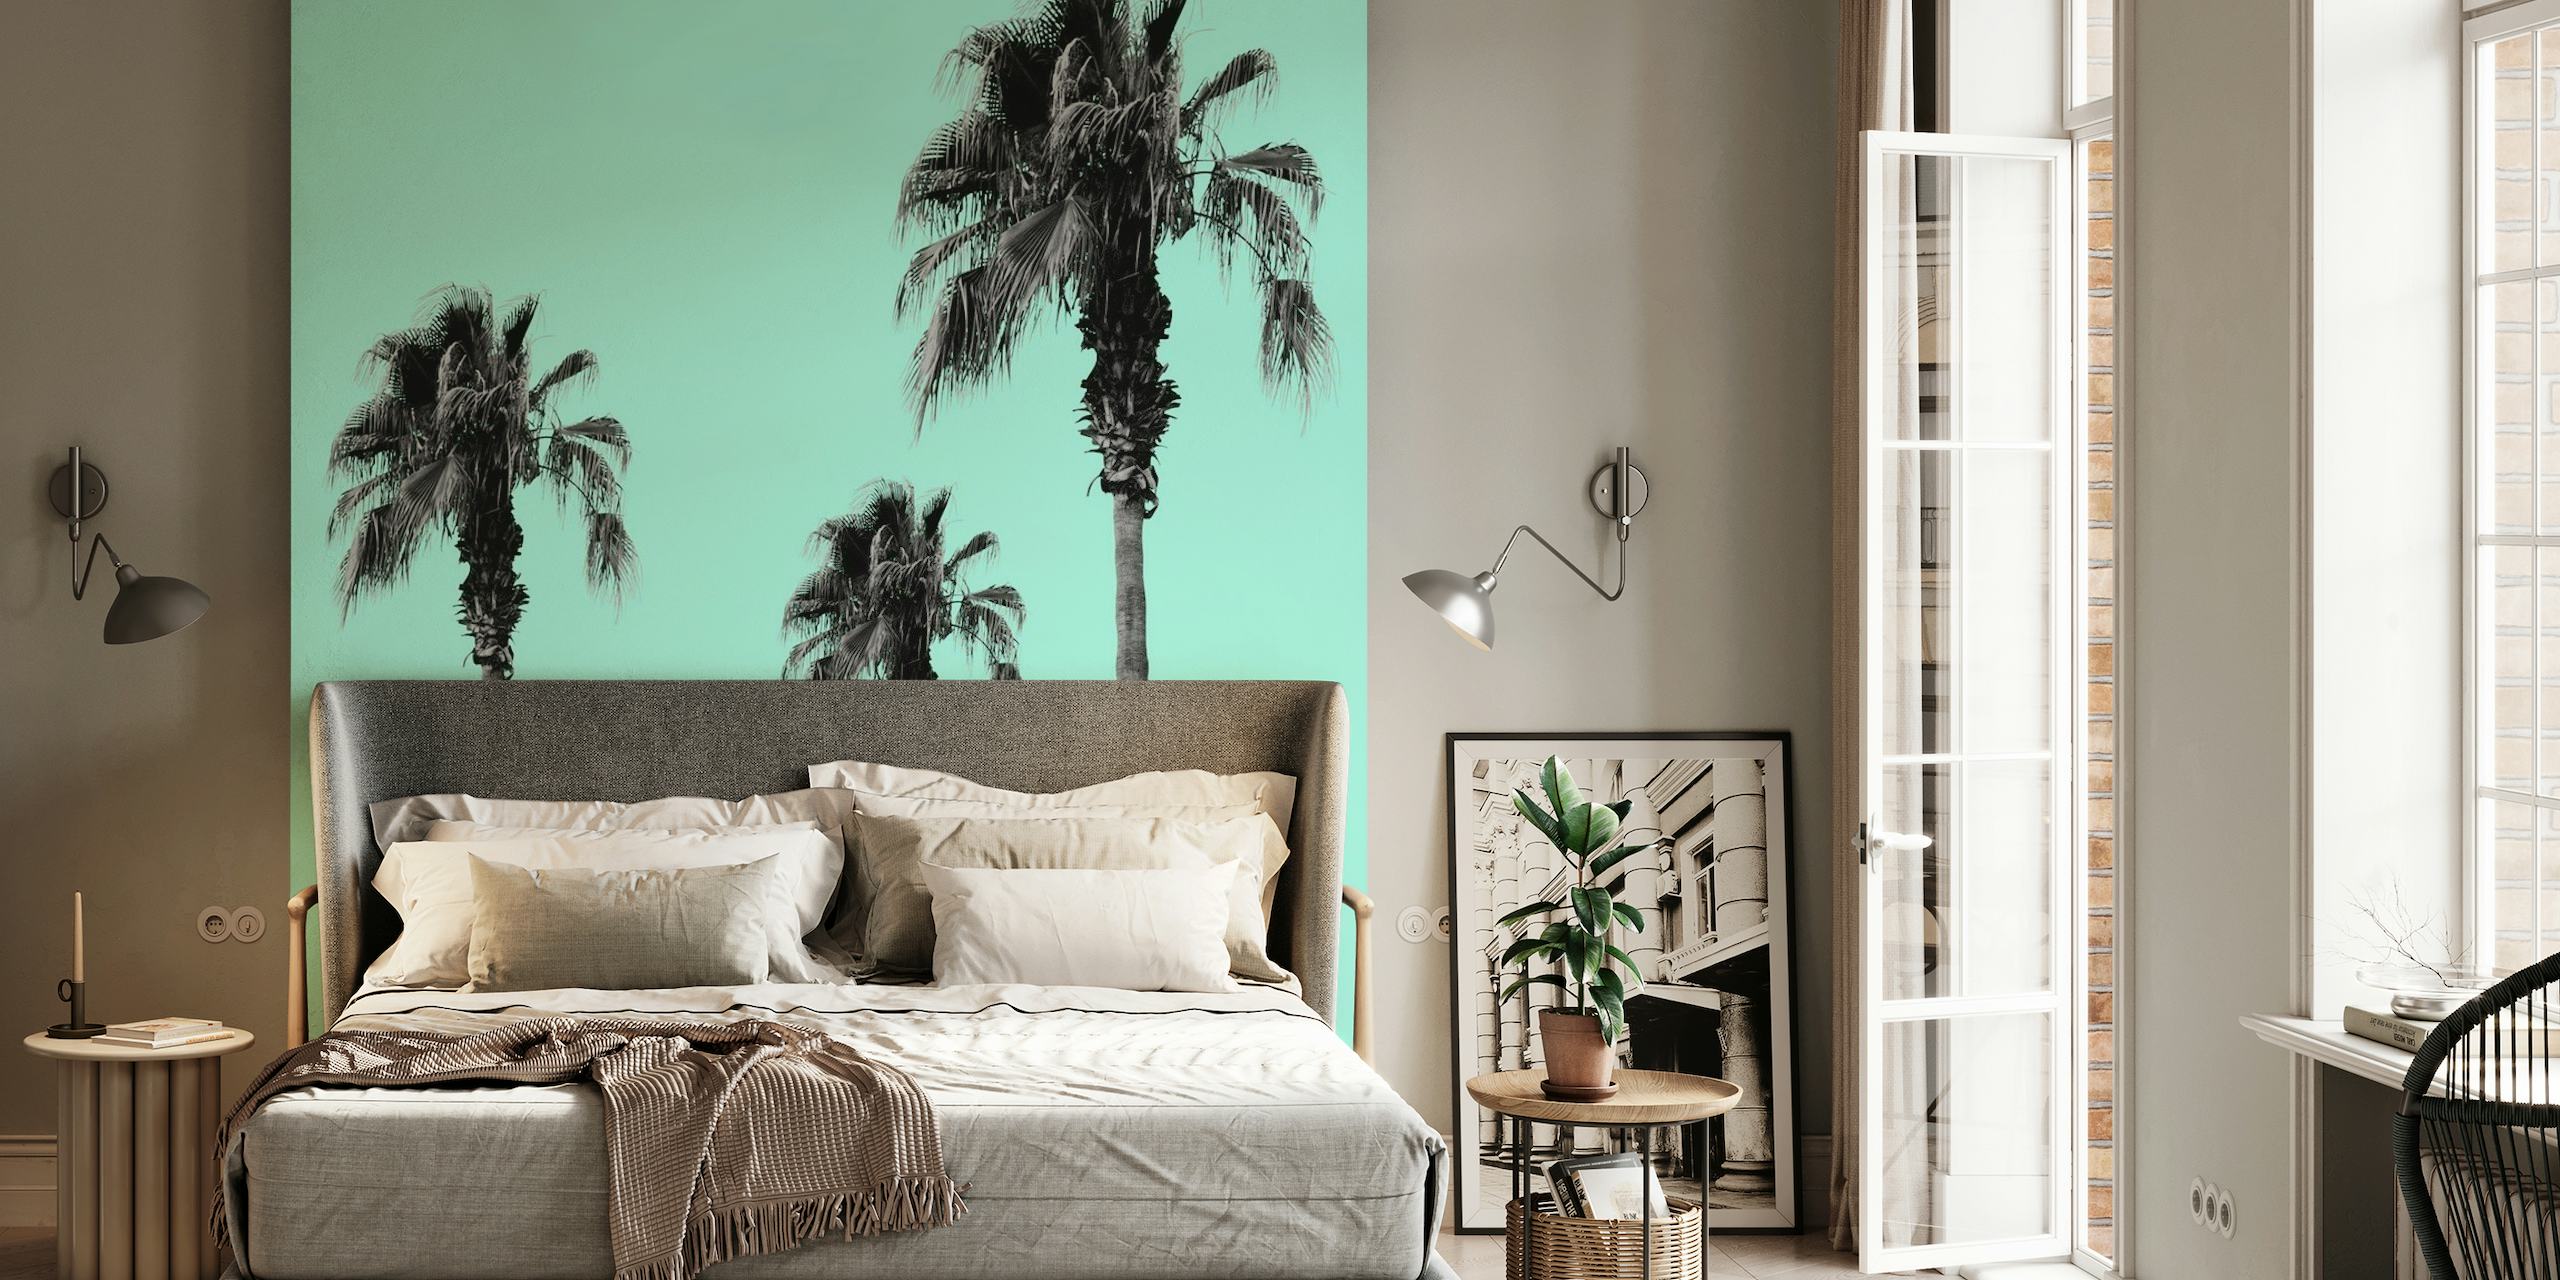 Boho Palm Trees Dream 1 papel pintado